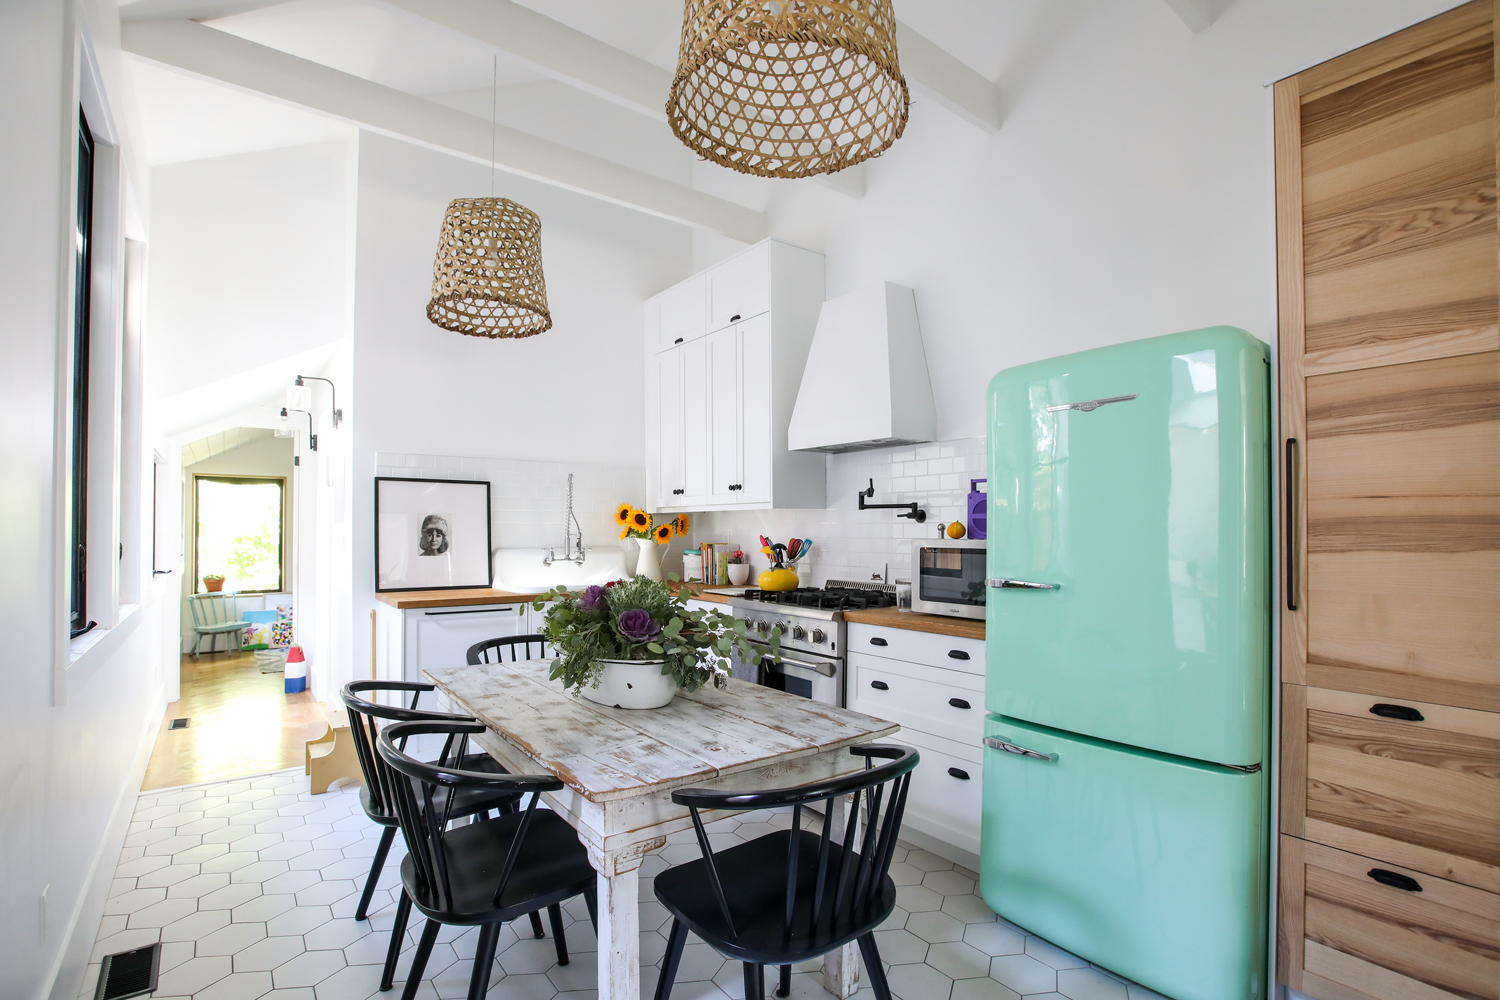 Vintage mint green fridge in modern white kitchen